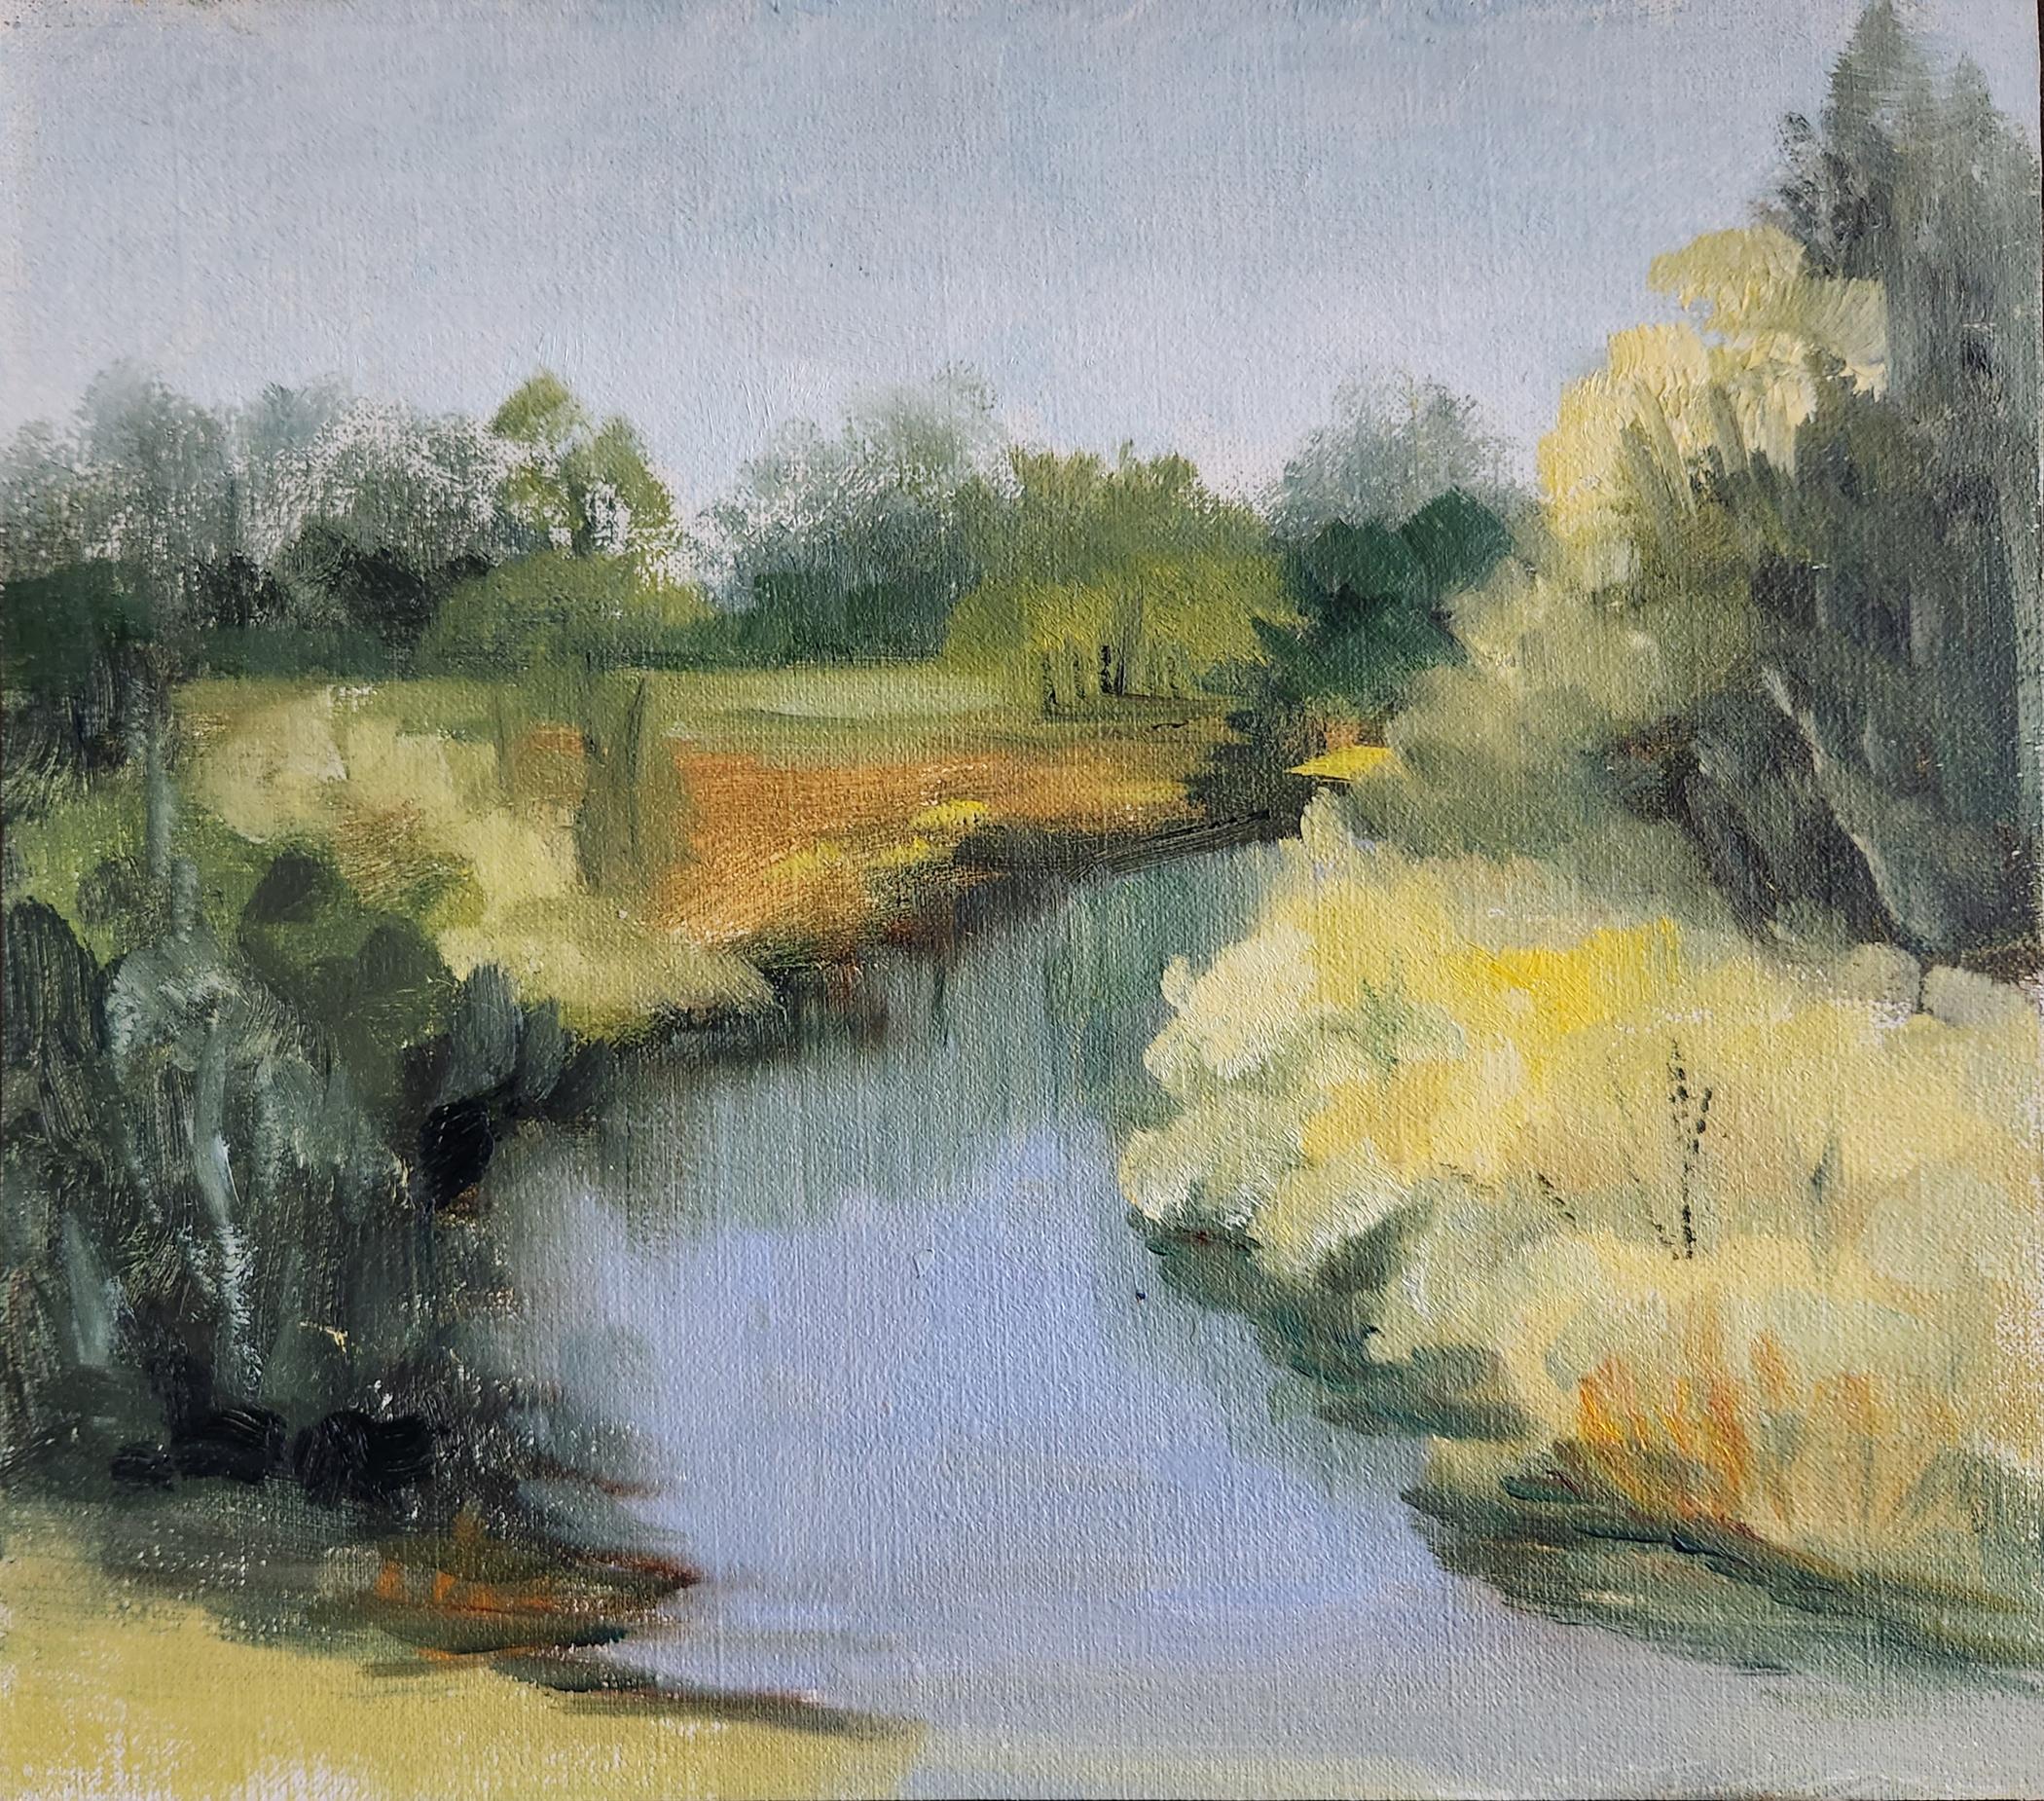 Plein Air Creekside, 8x9" huile sur carton - Painting de Lu Haskew